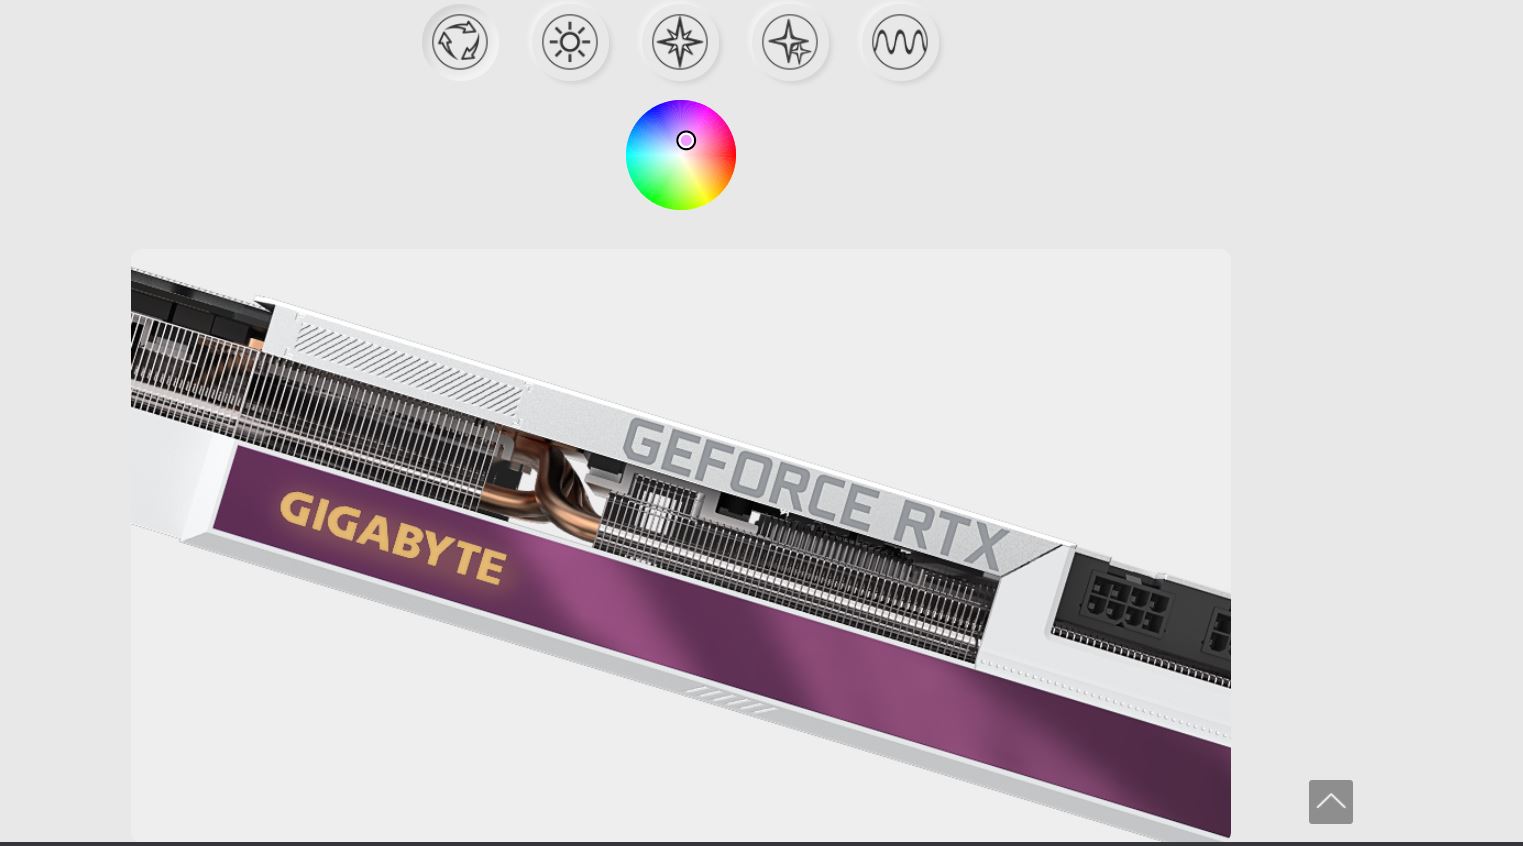 Card màn hình Gigabyte RTX 3060 VISION OC 12GD-V2